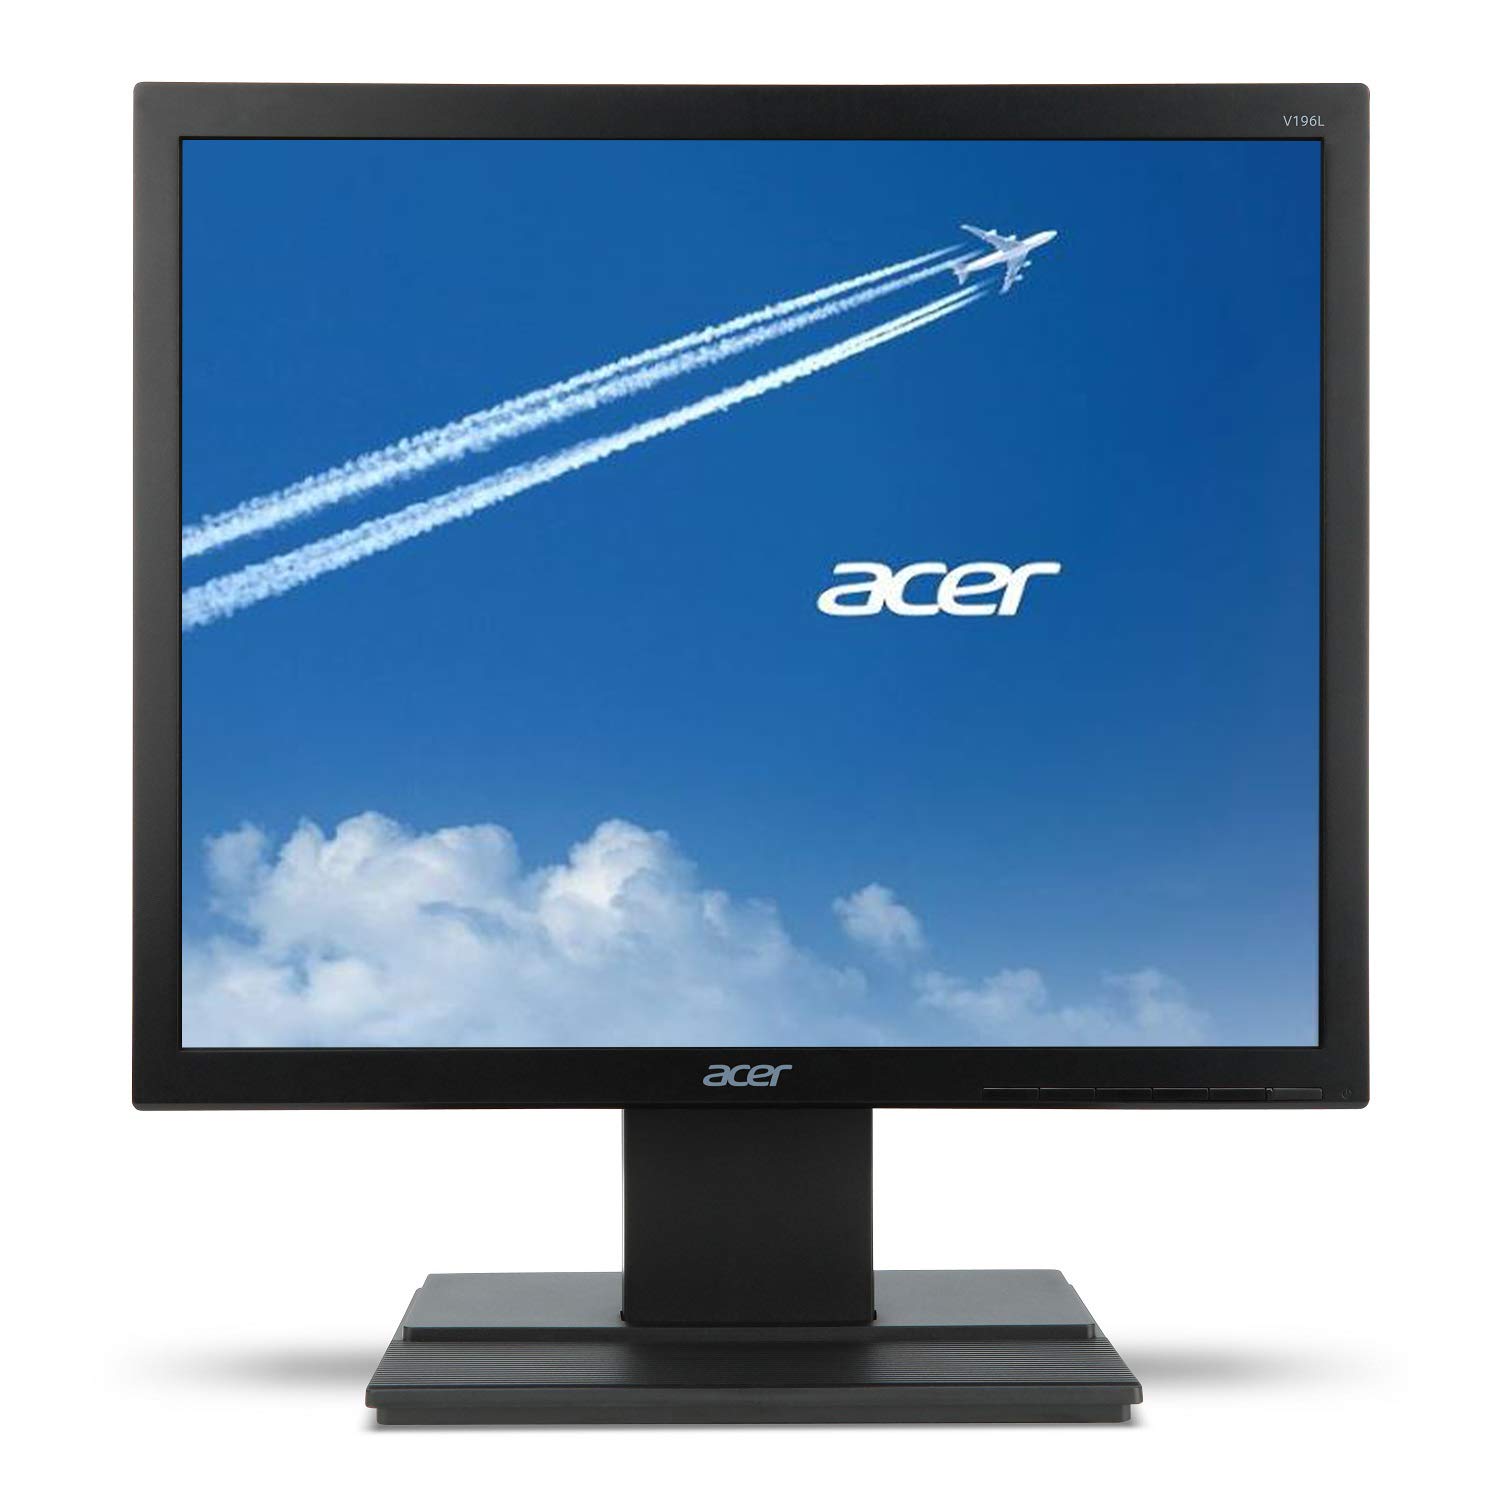 Acer वी196एल बीबी 19' एचडी (1280 x 1024) आईपीएस मॉनिटर (वीजीए पोर्ट)